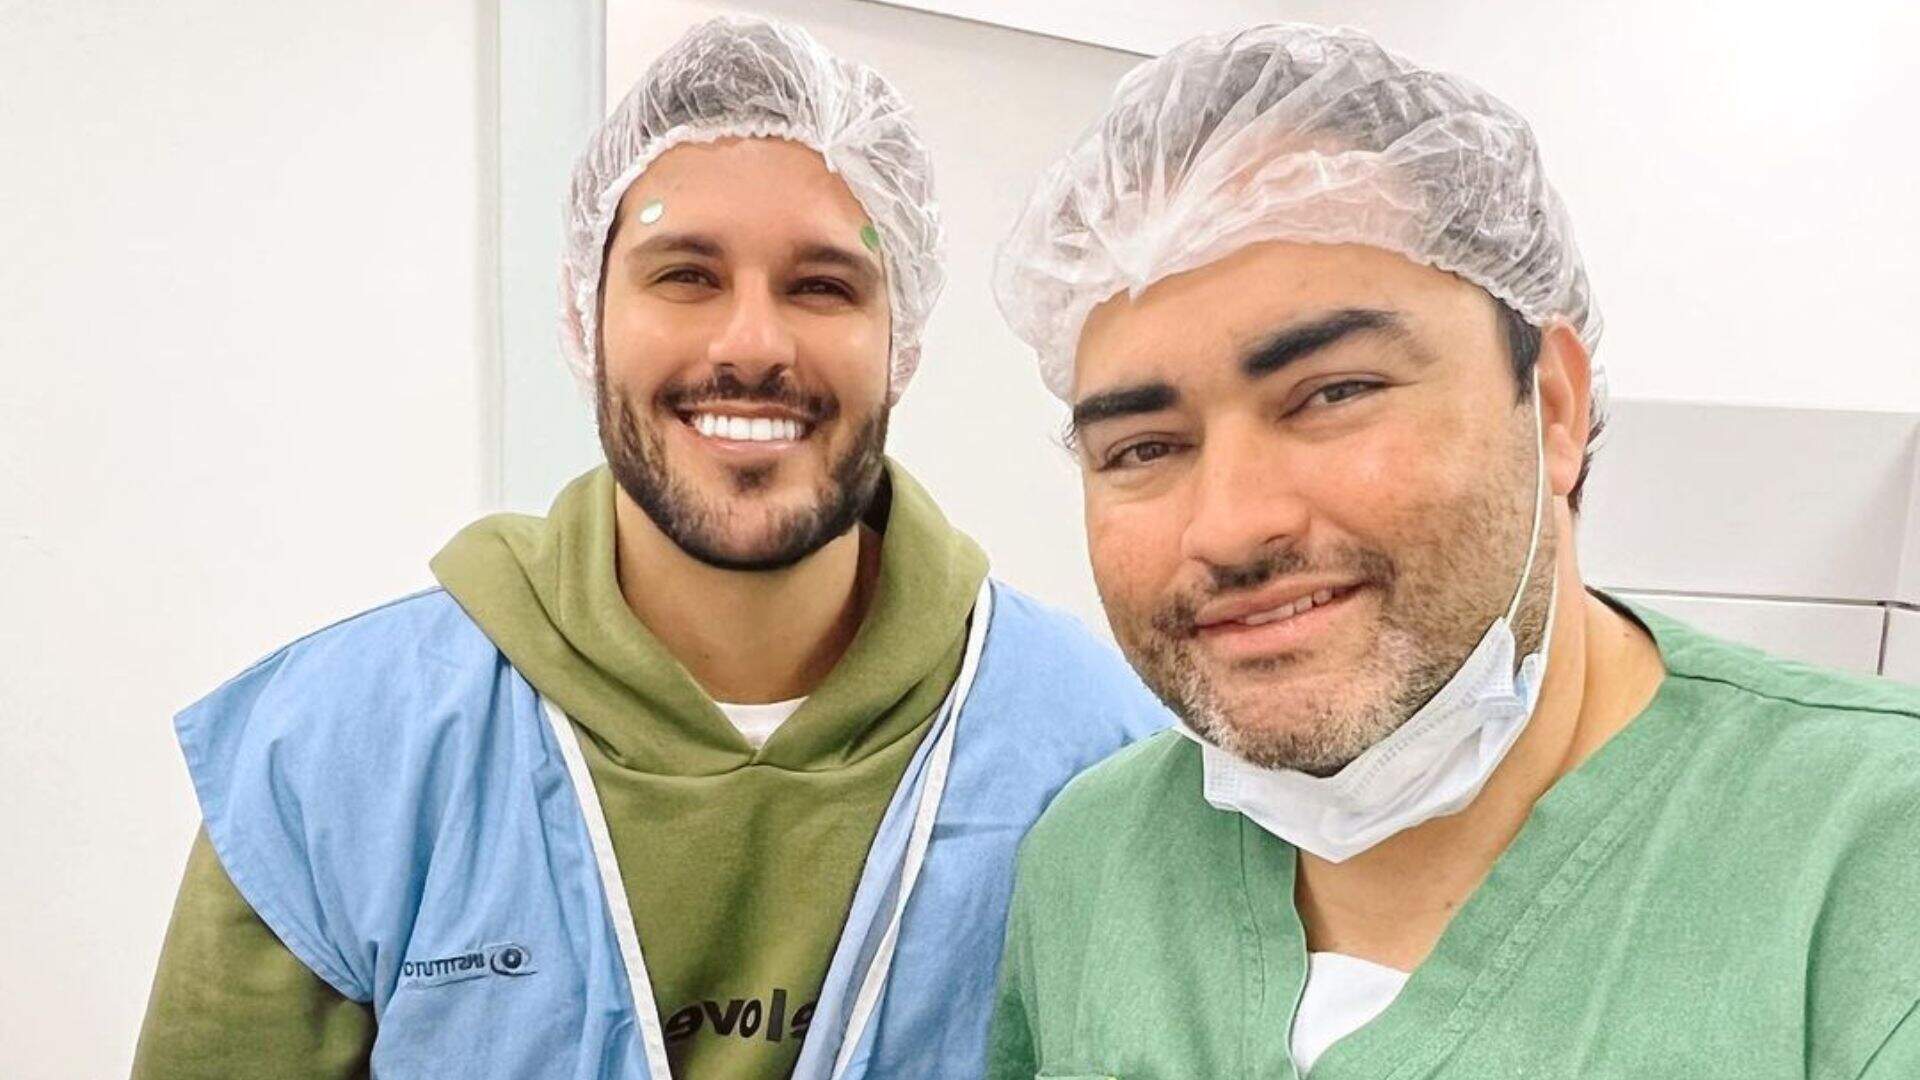 Seis meses após o acidente, Rodrigo Mussi passa por cirurgia nos olhos